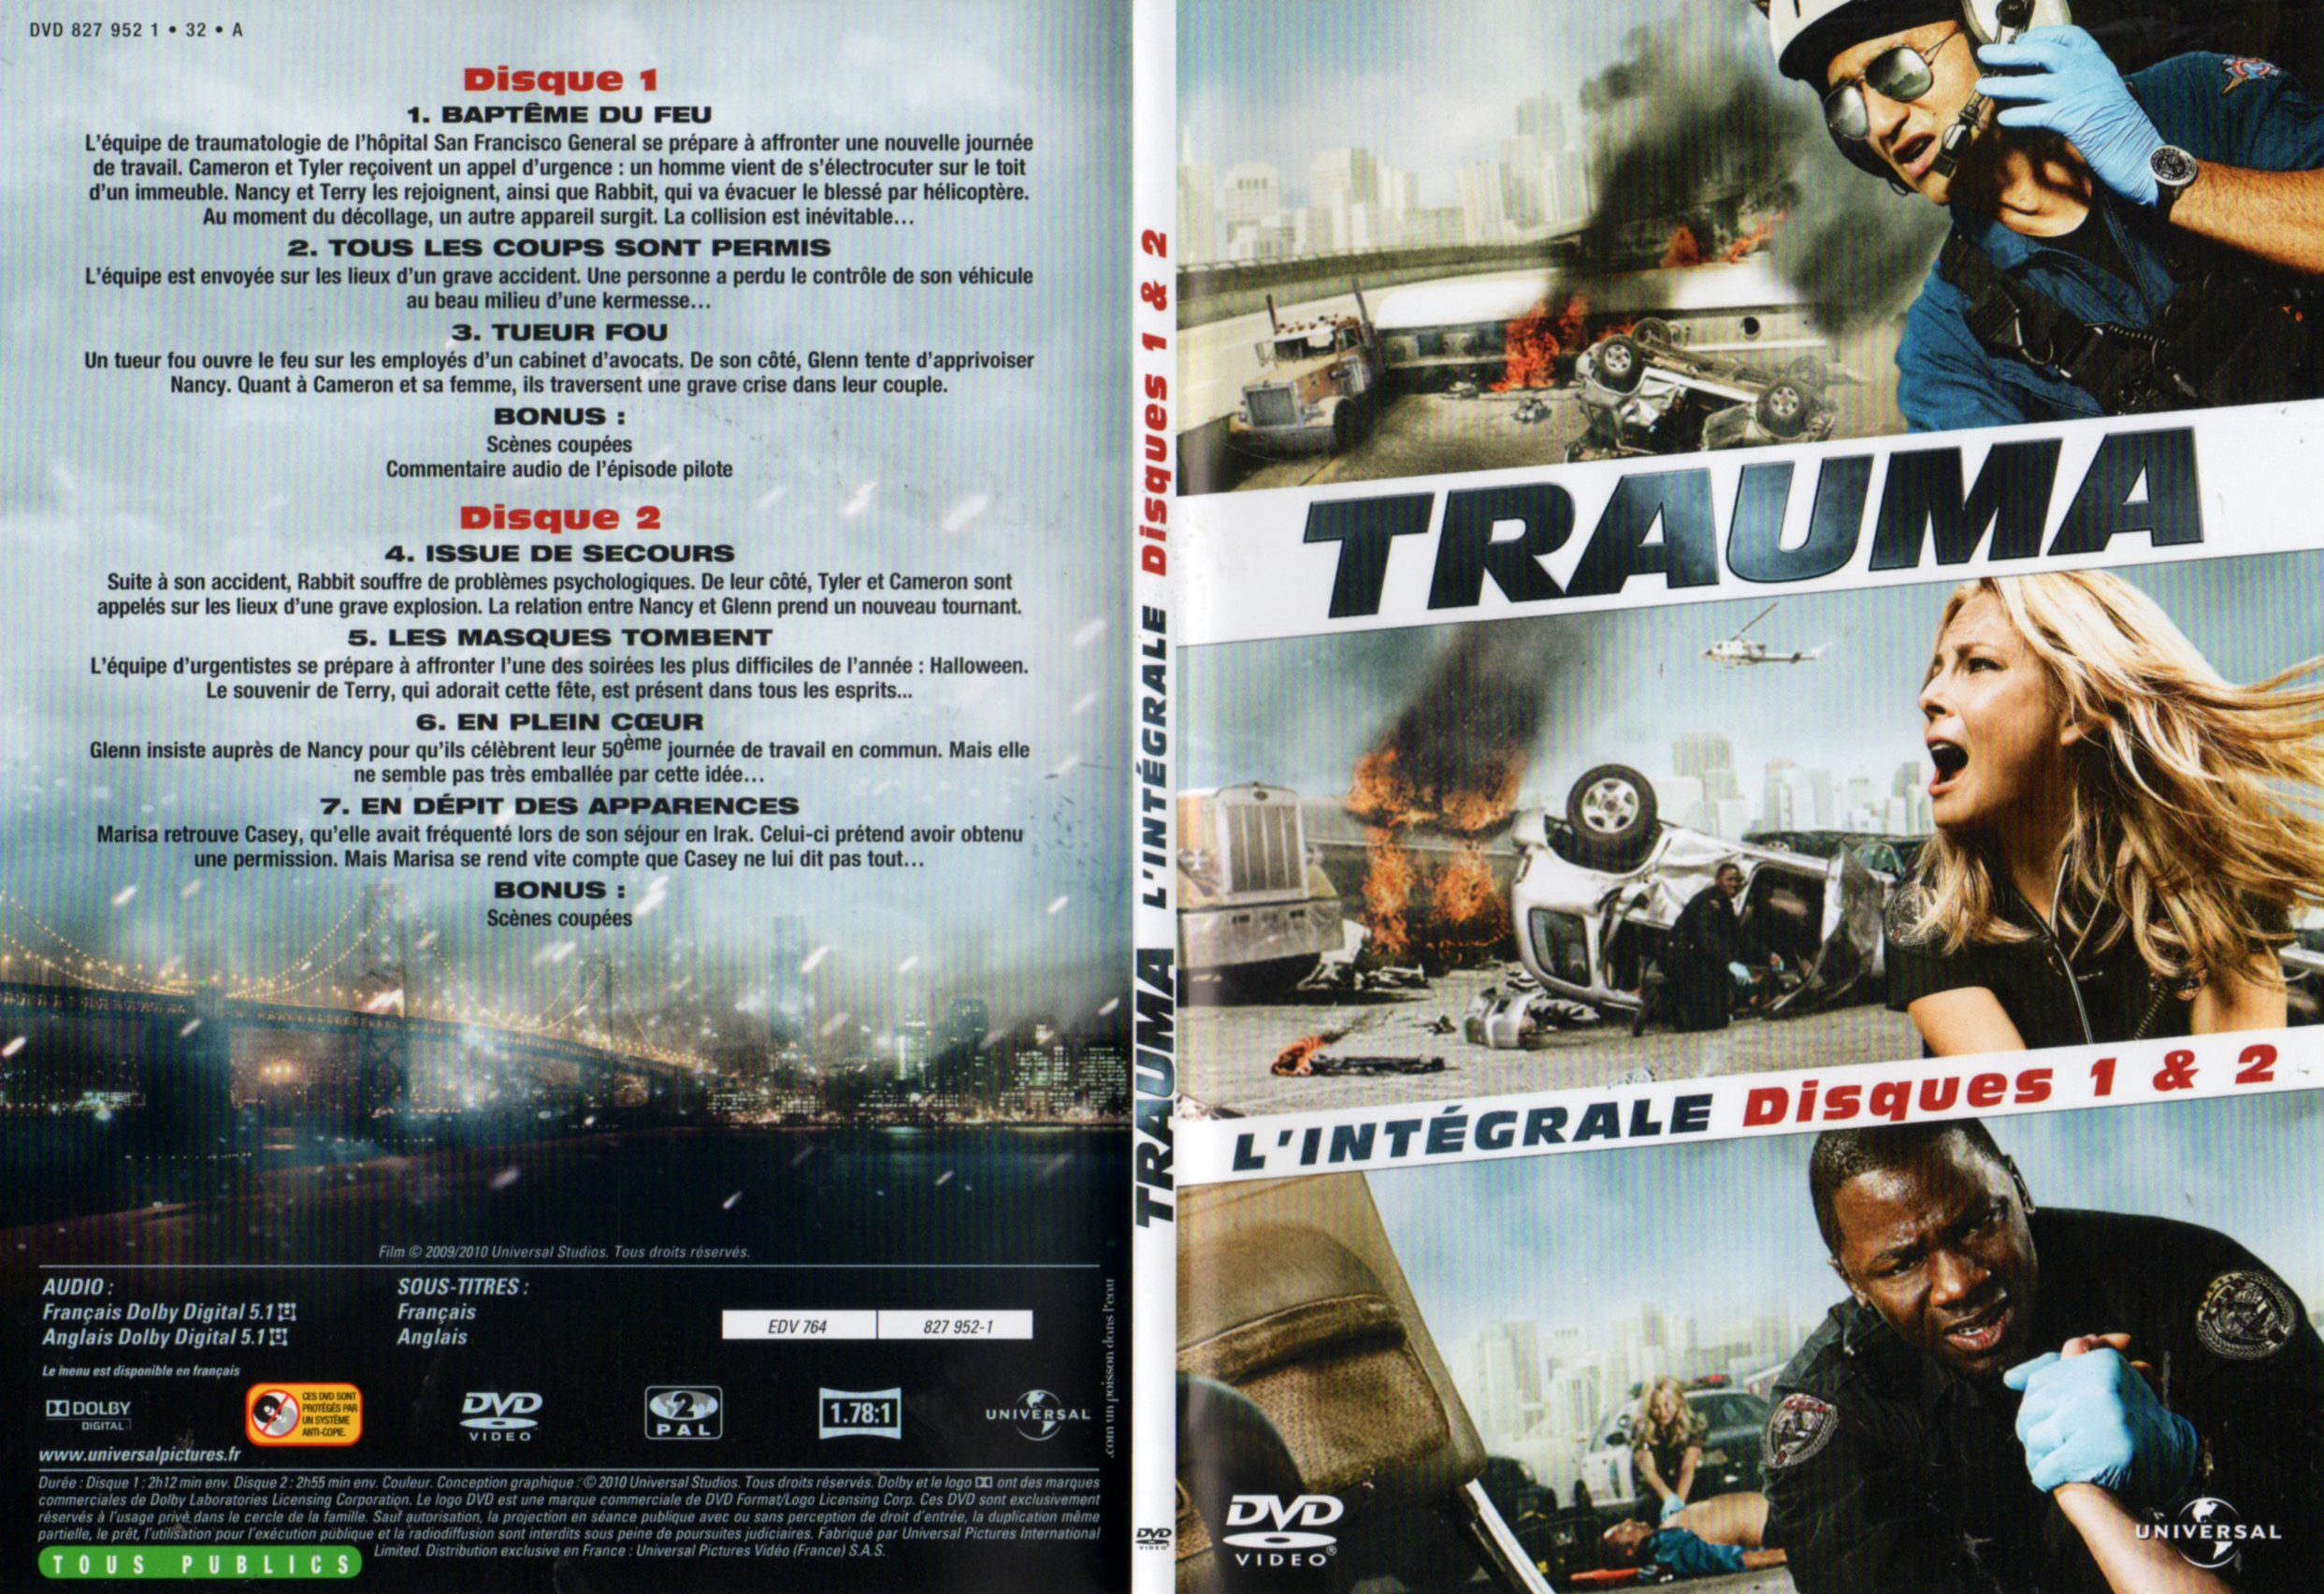 Jaquette DVD Trauma (Intgrale) DISC 1